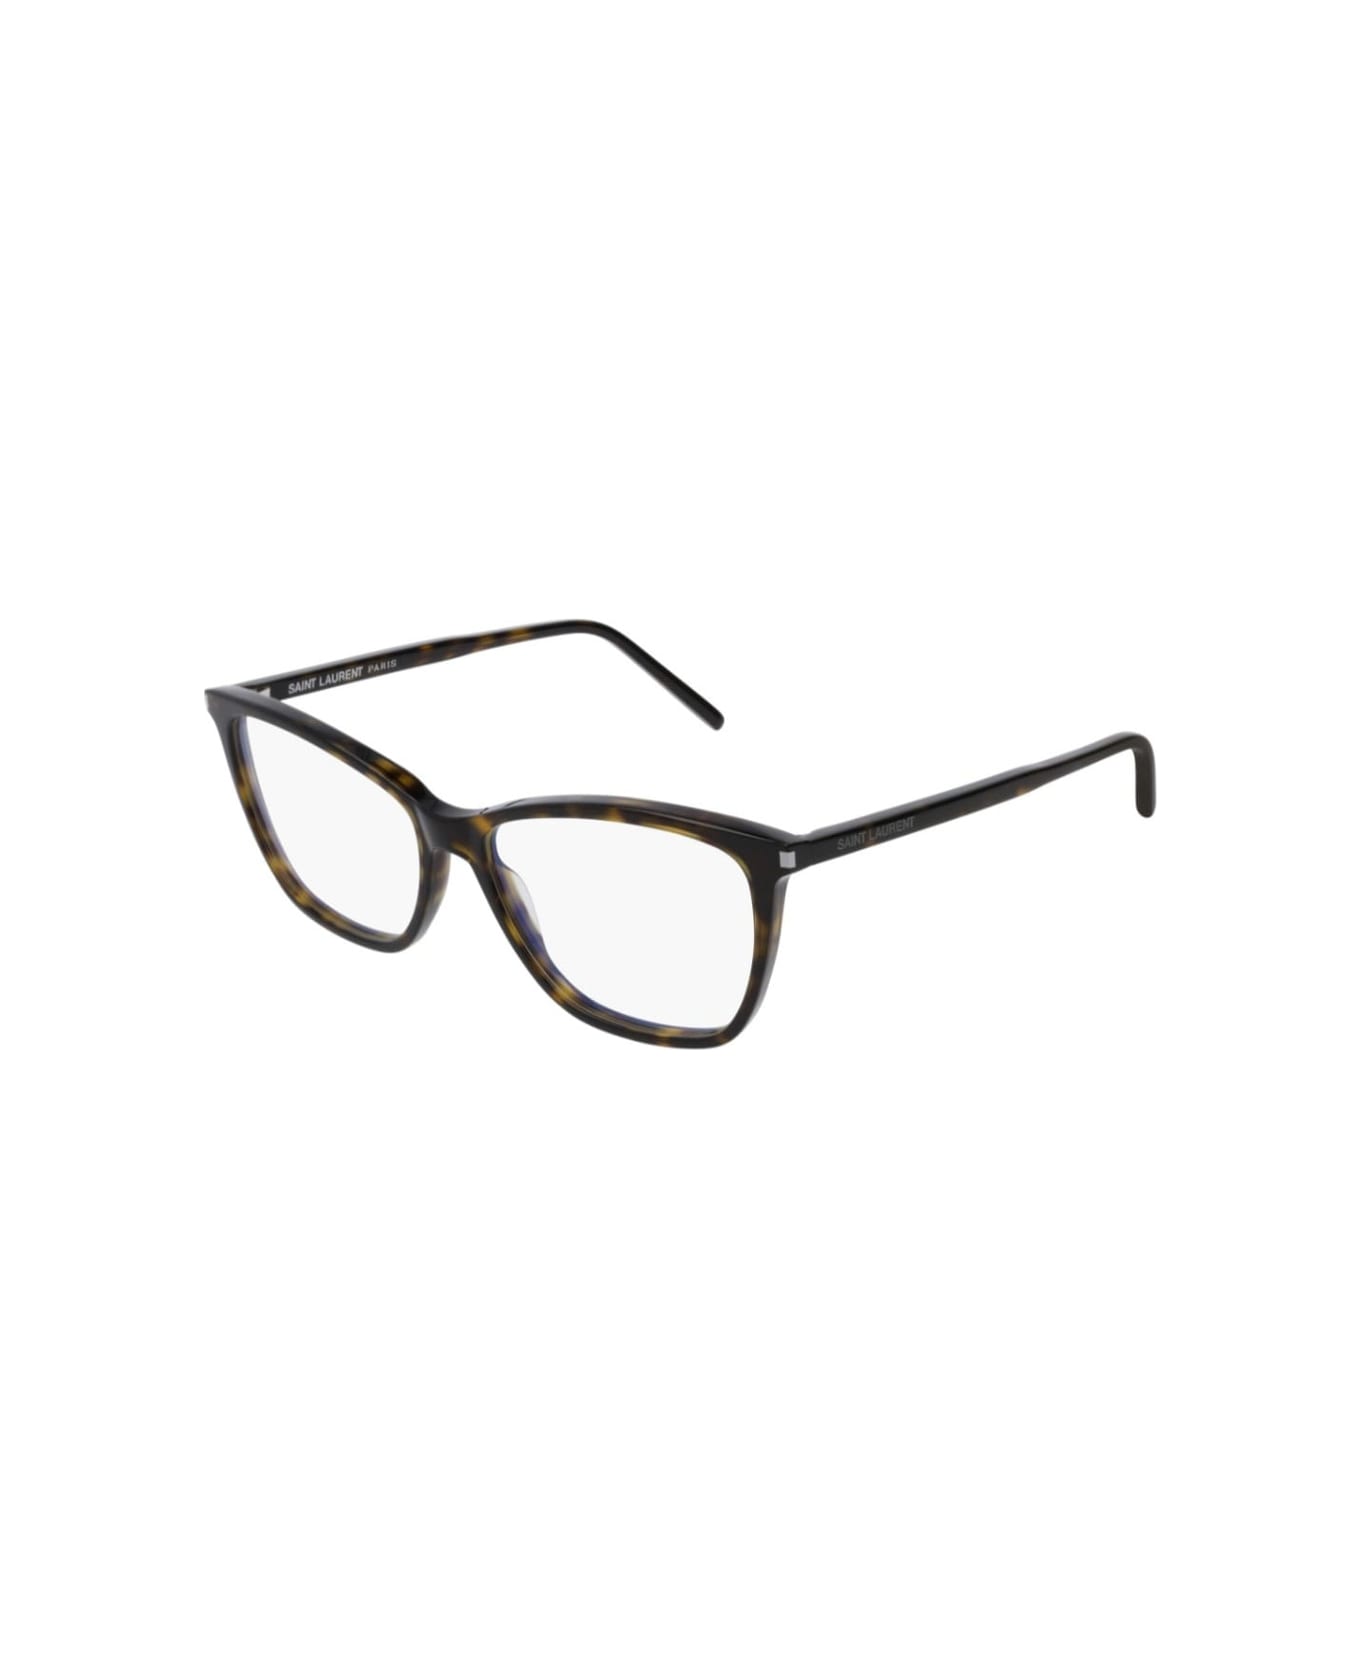 Saint Laurent Eyewear sl 259 002 Glasses アイウェア